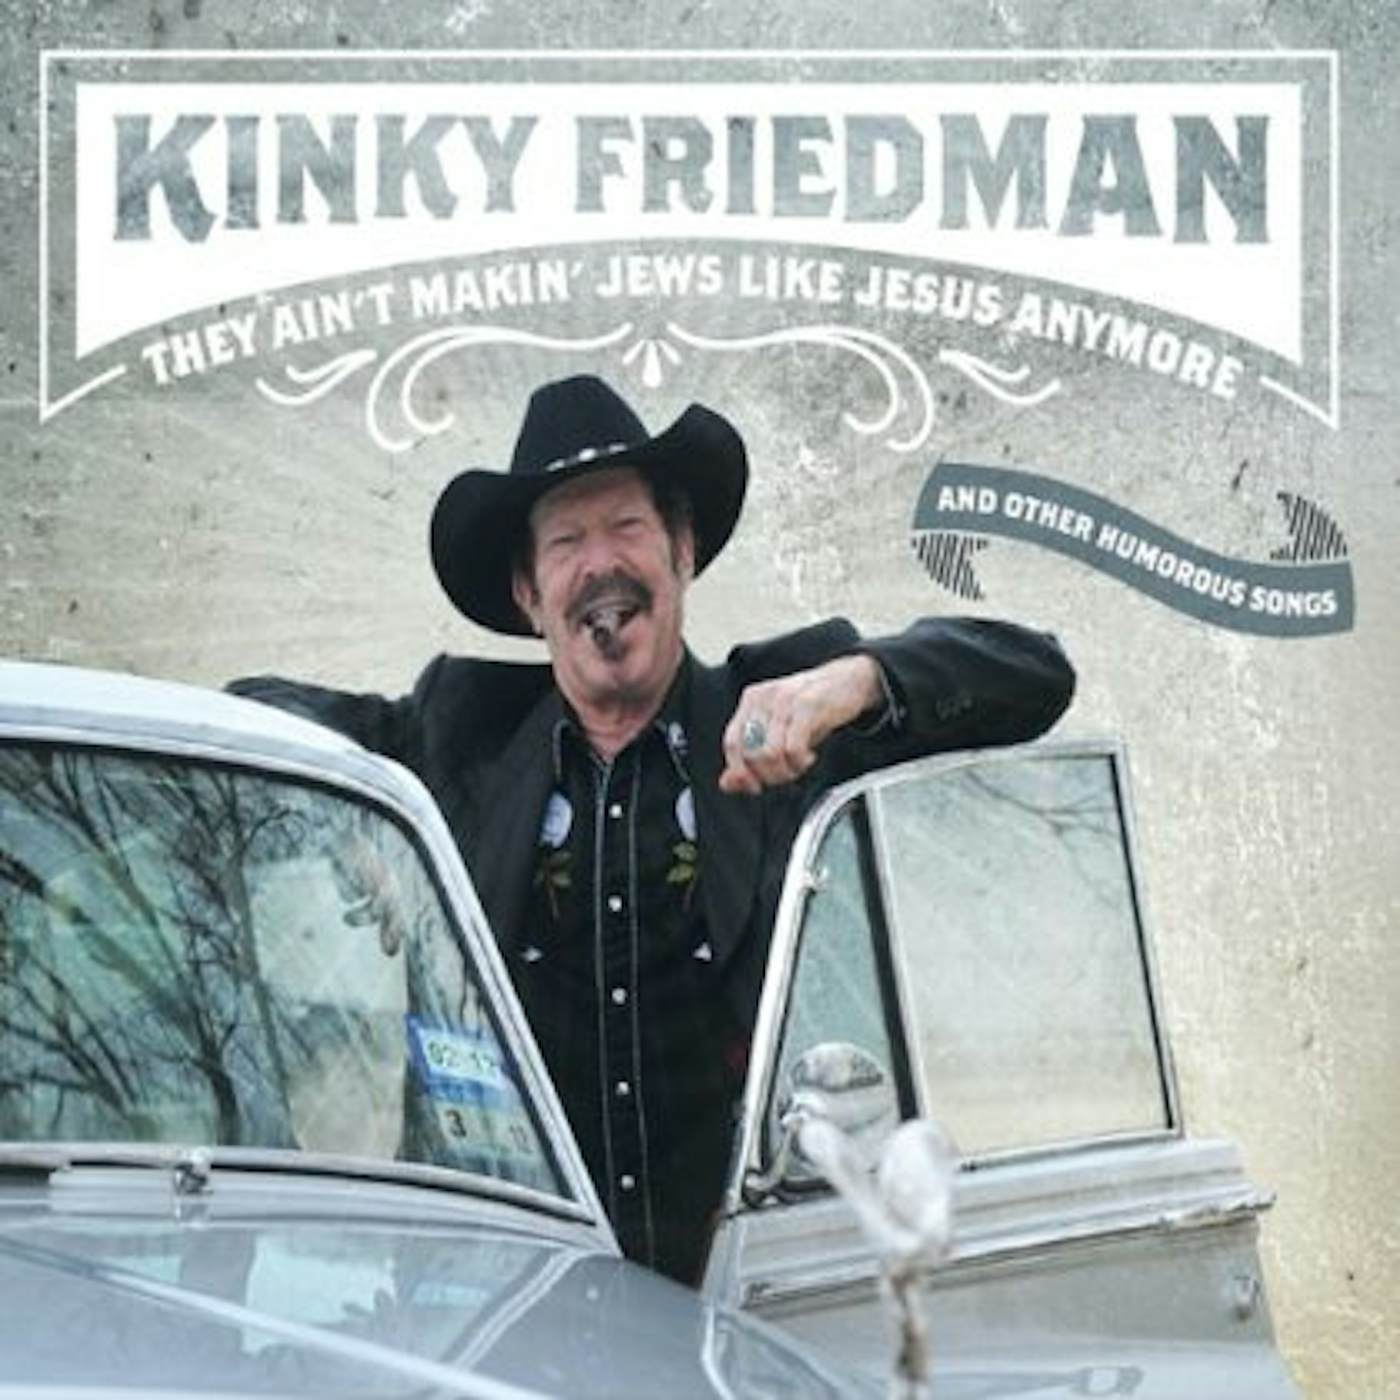 Kinky Friedman THEY AIN'T MAKIN JEWS LIKE JESUS ANYMORE CD